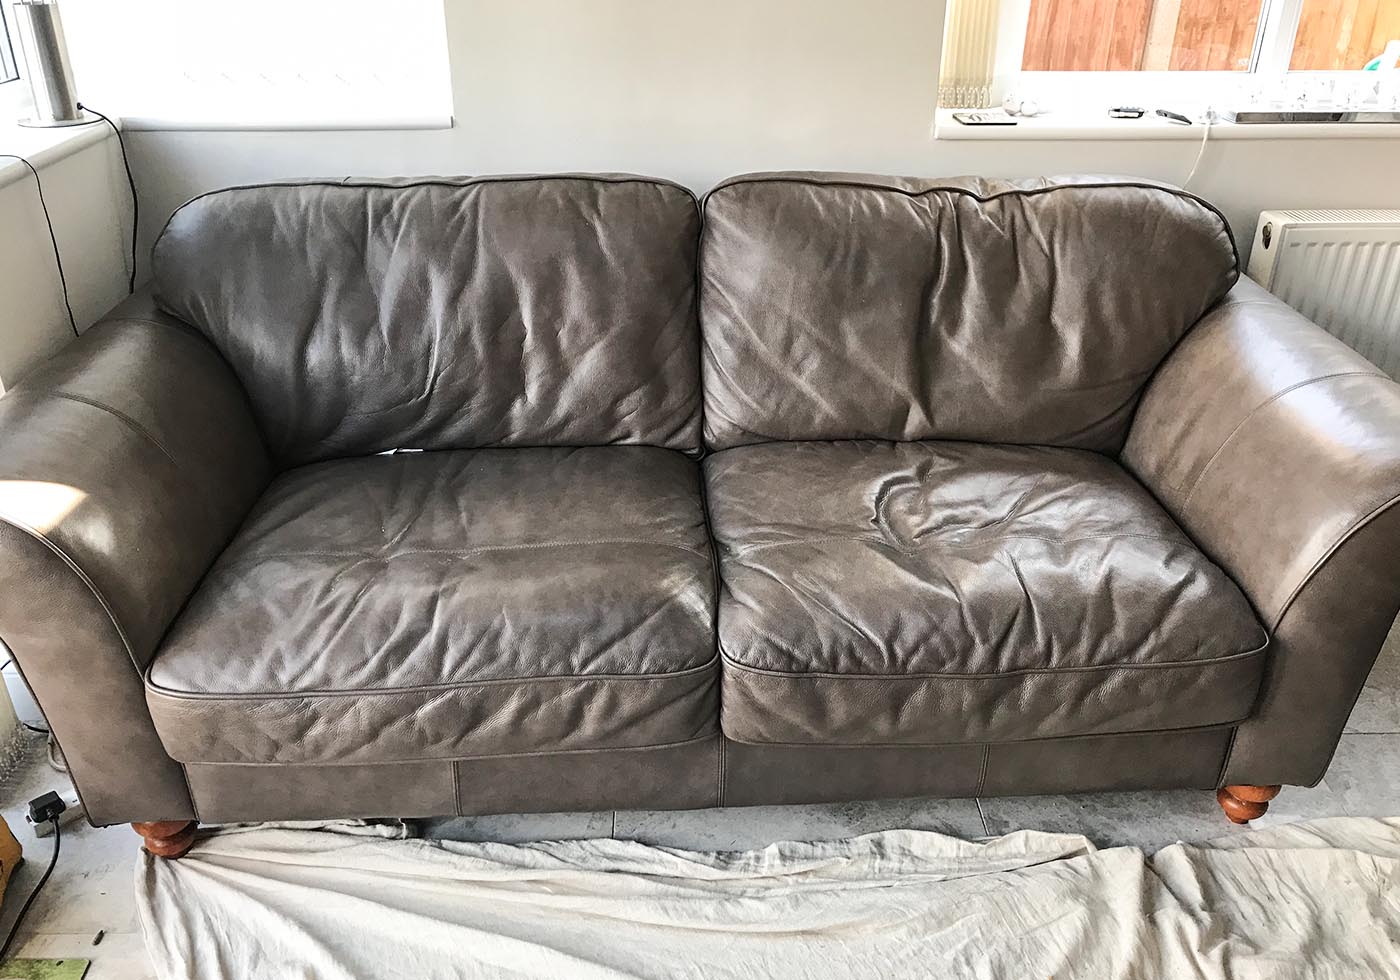 Sofa cushions worn down